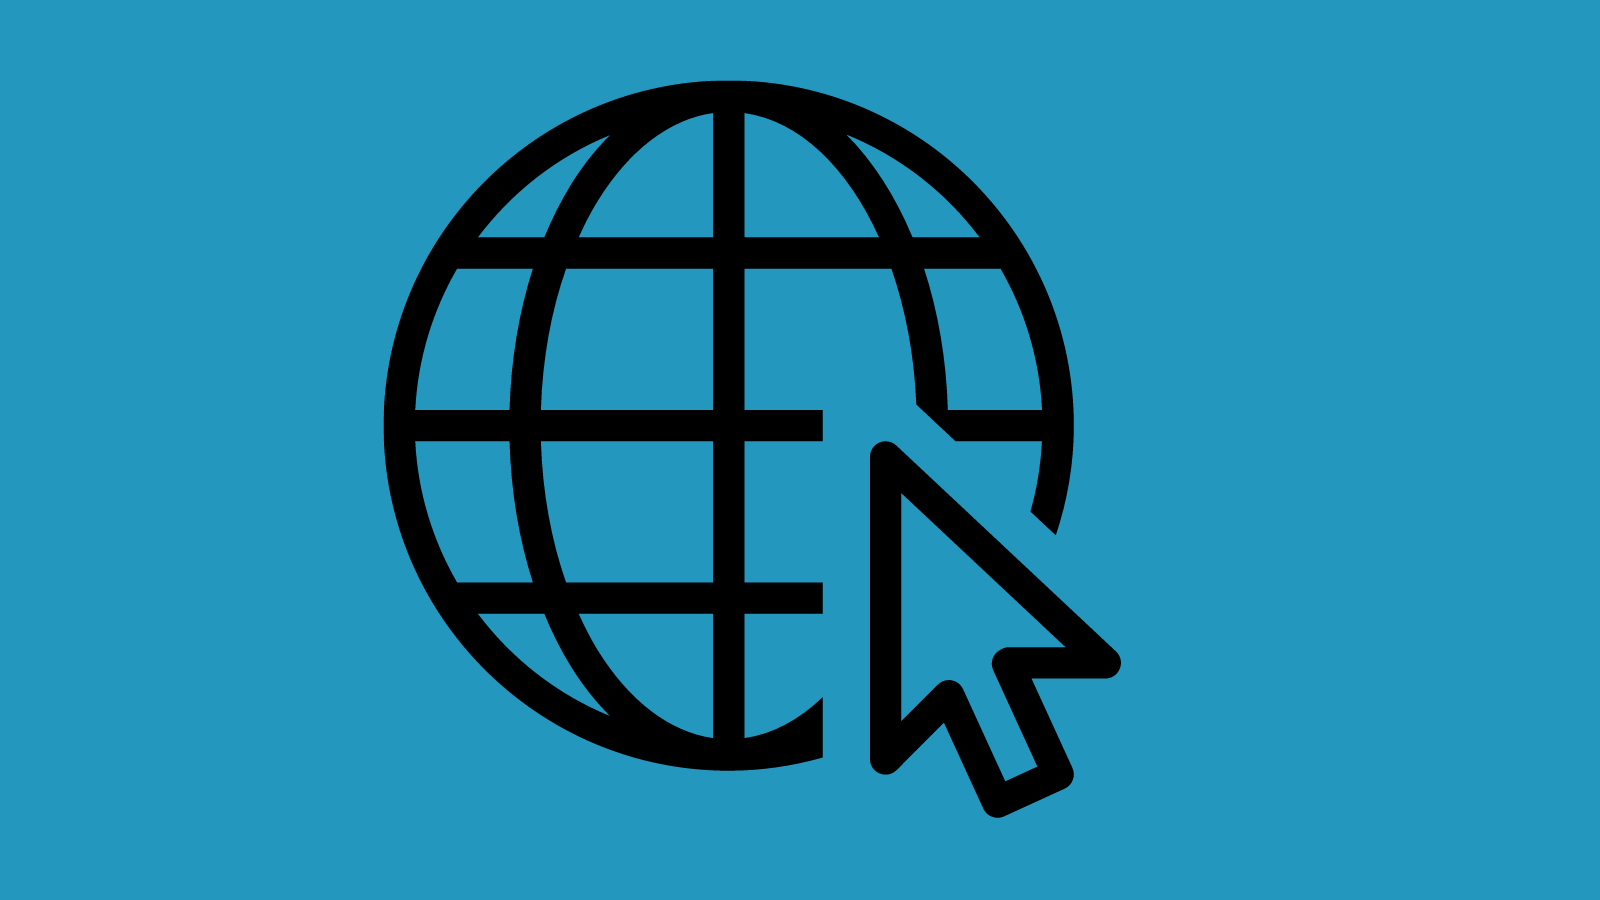 A globe icon and a cursor